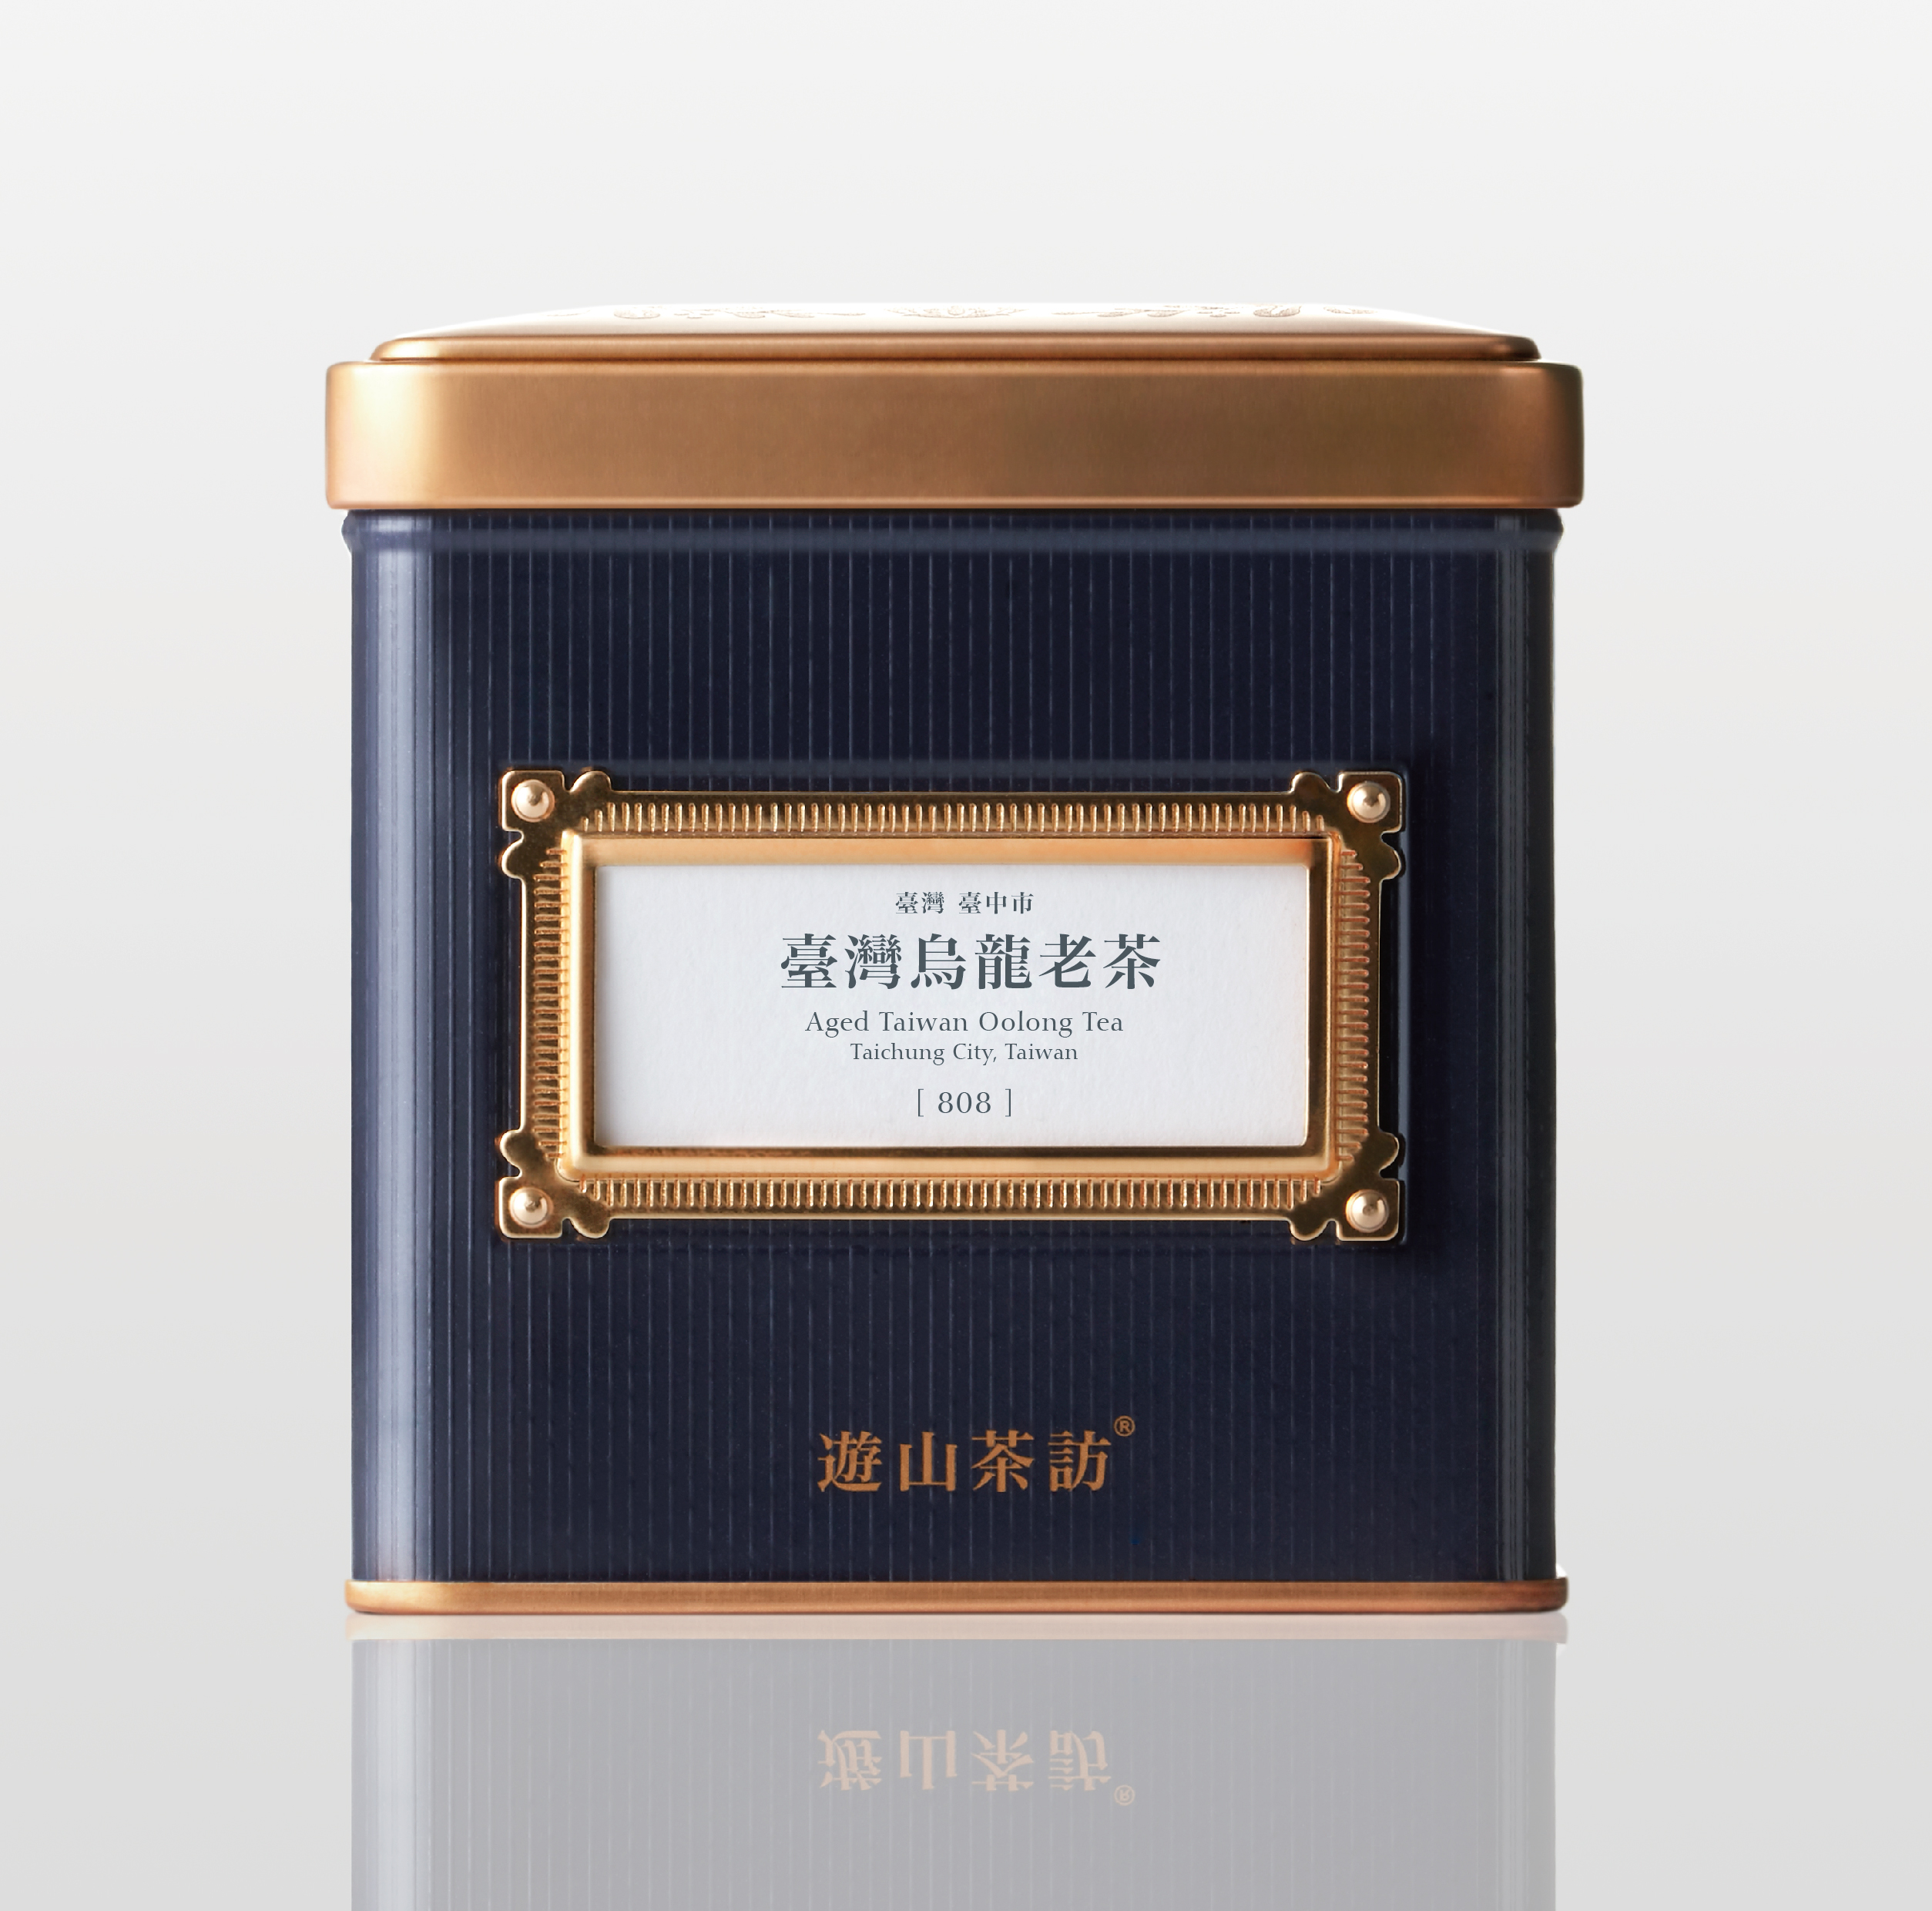 Aged Taiwan Oolong Tea